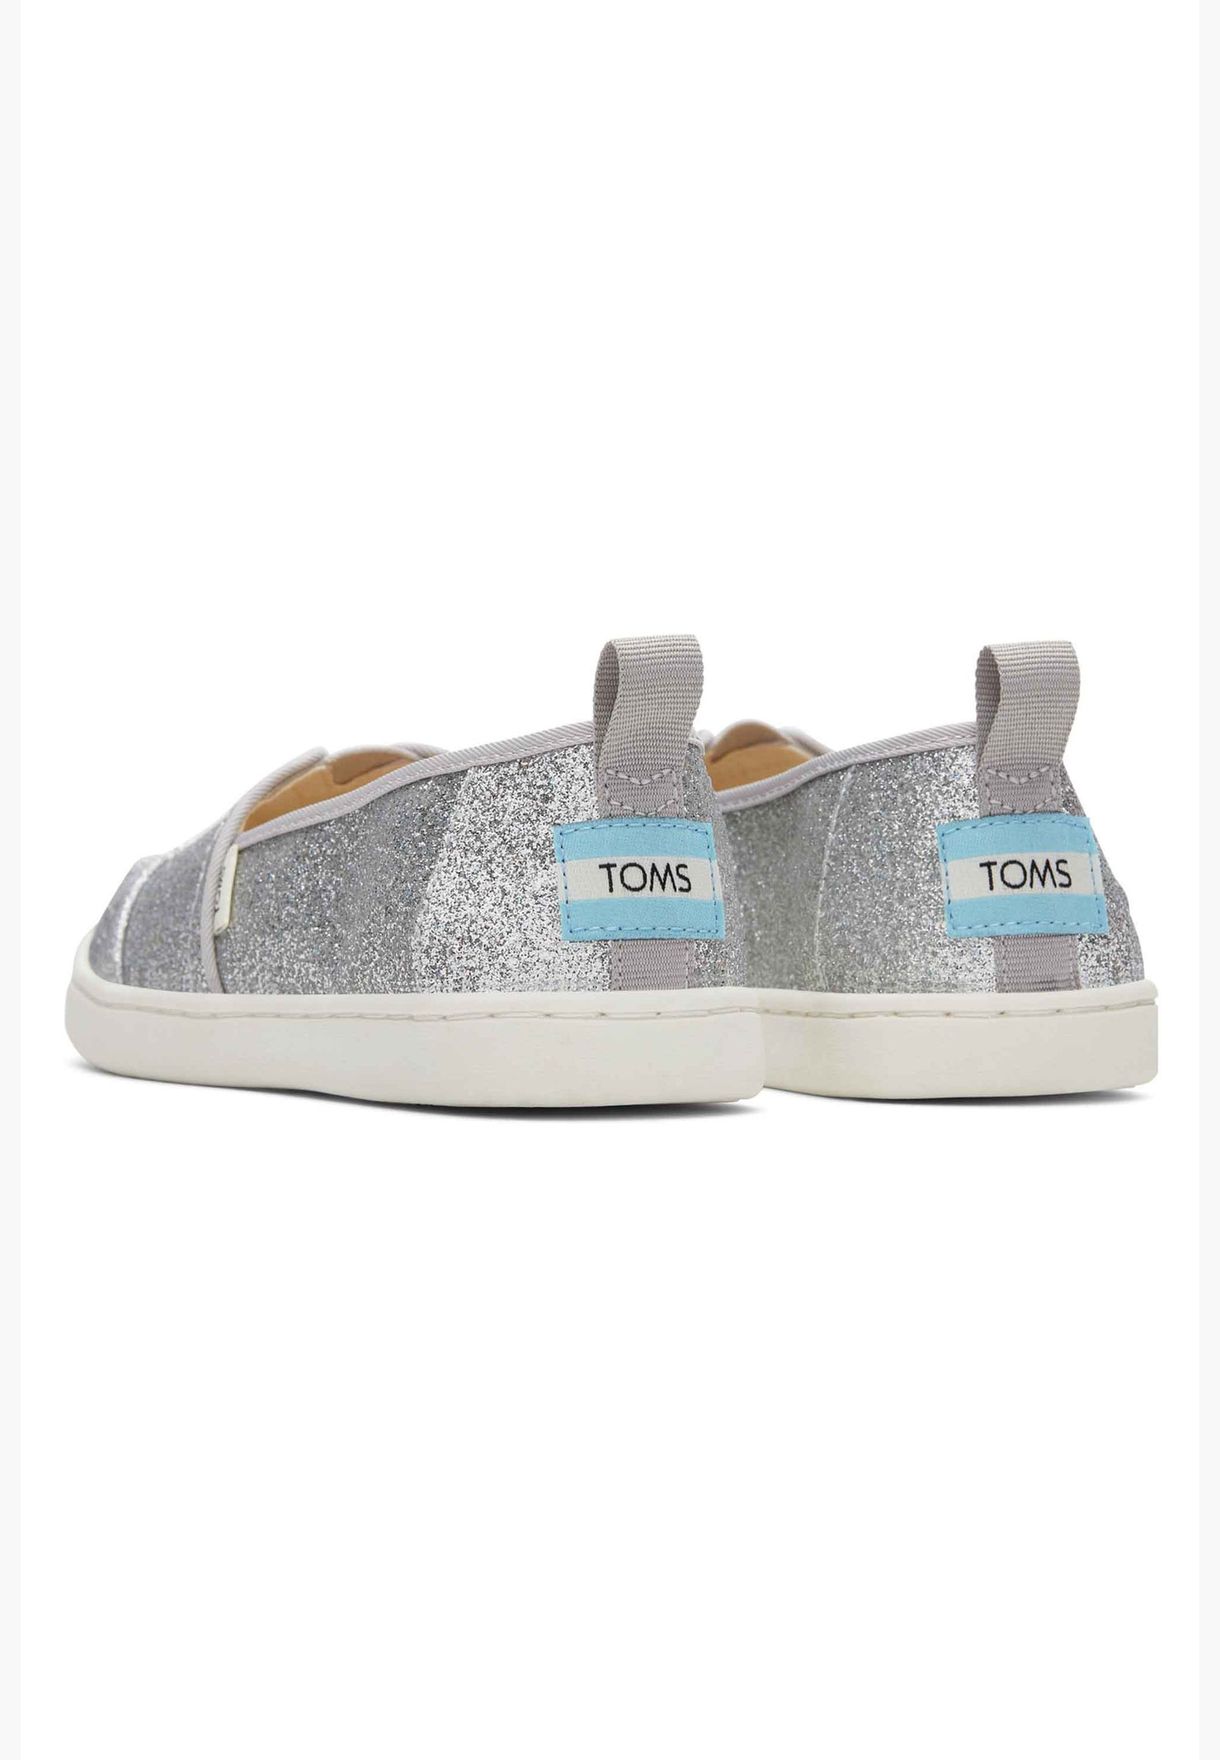 Toms Girl's Alpargata Shoes, 10017760, Silver, 36 EU